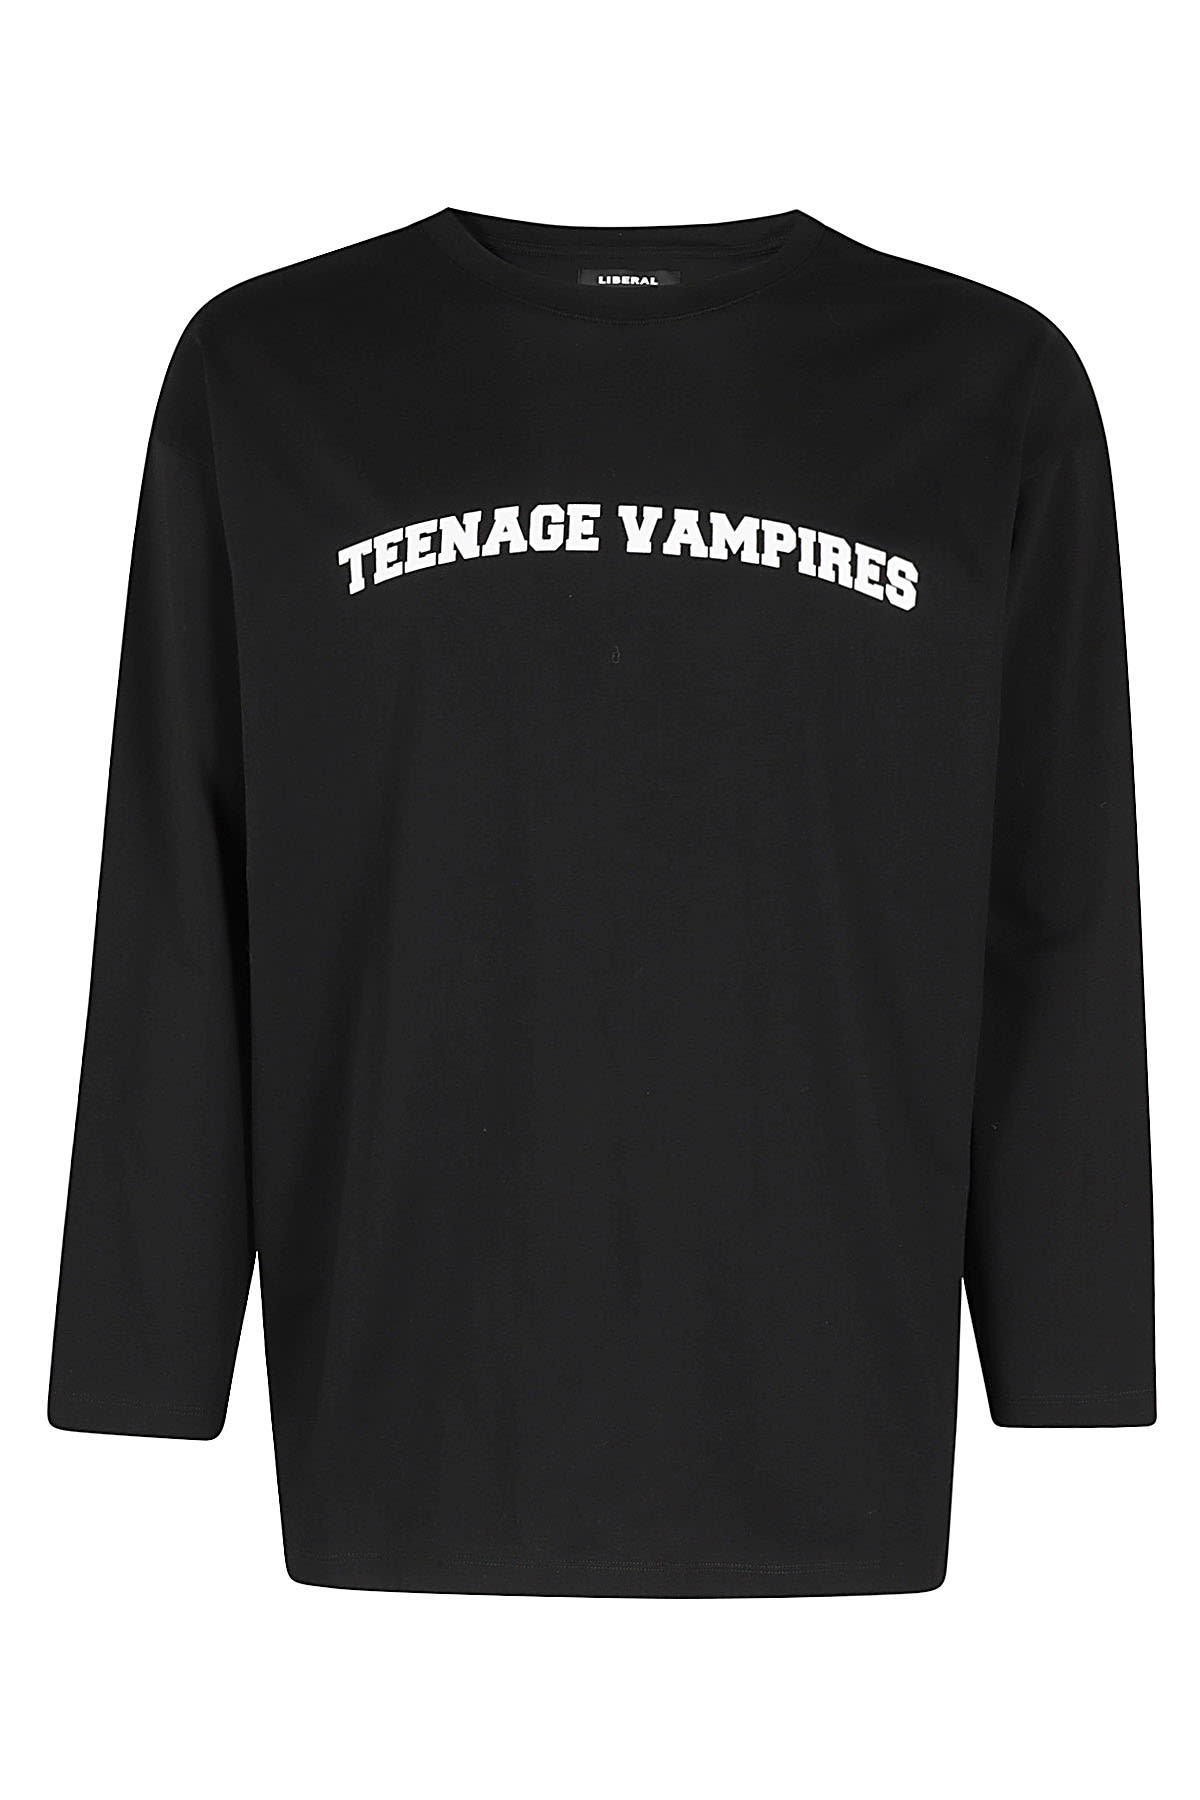 Teenage Vampires